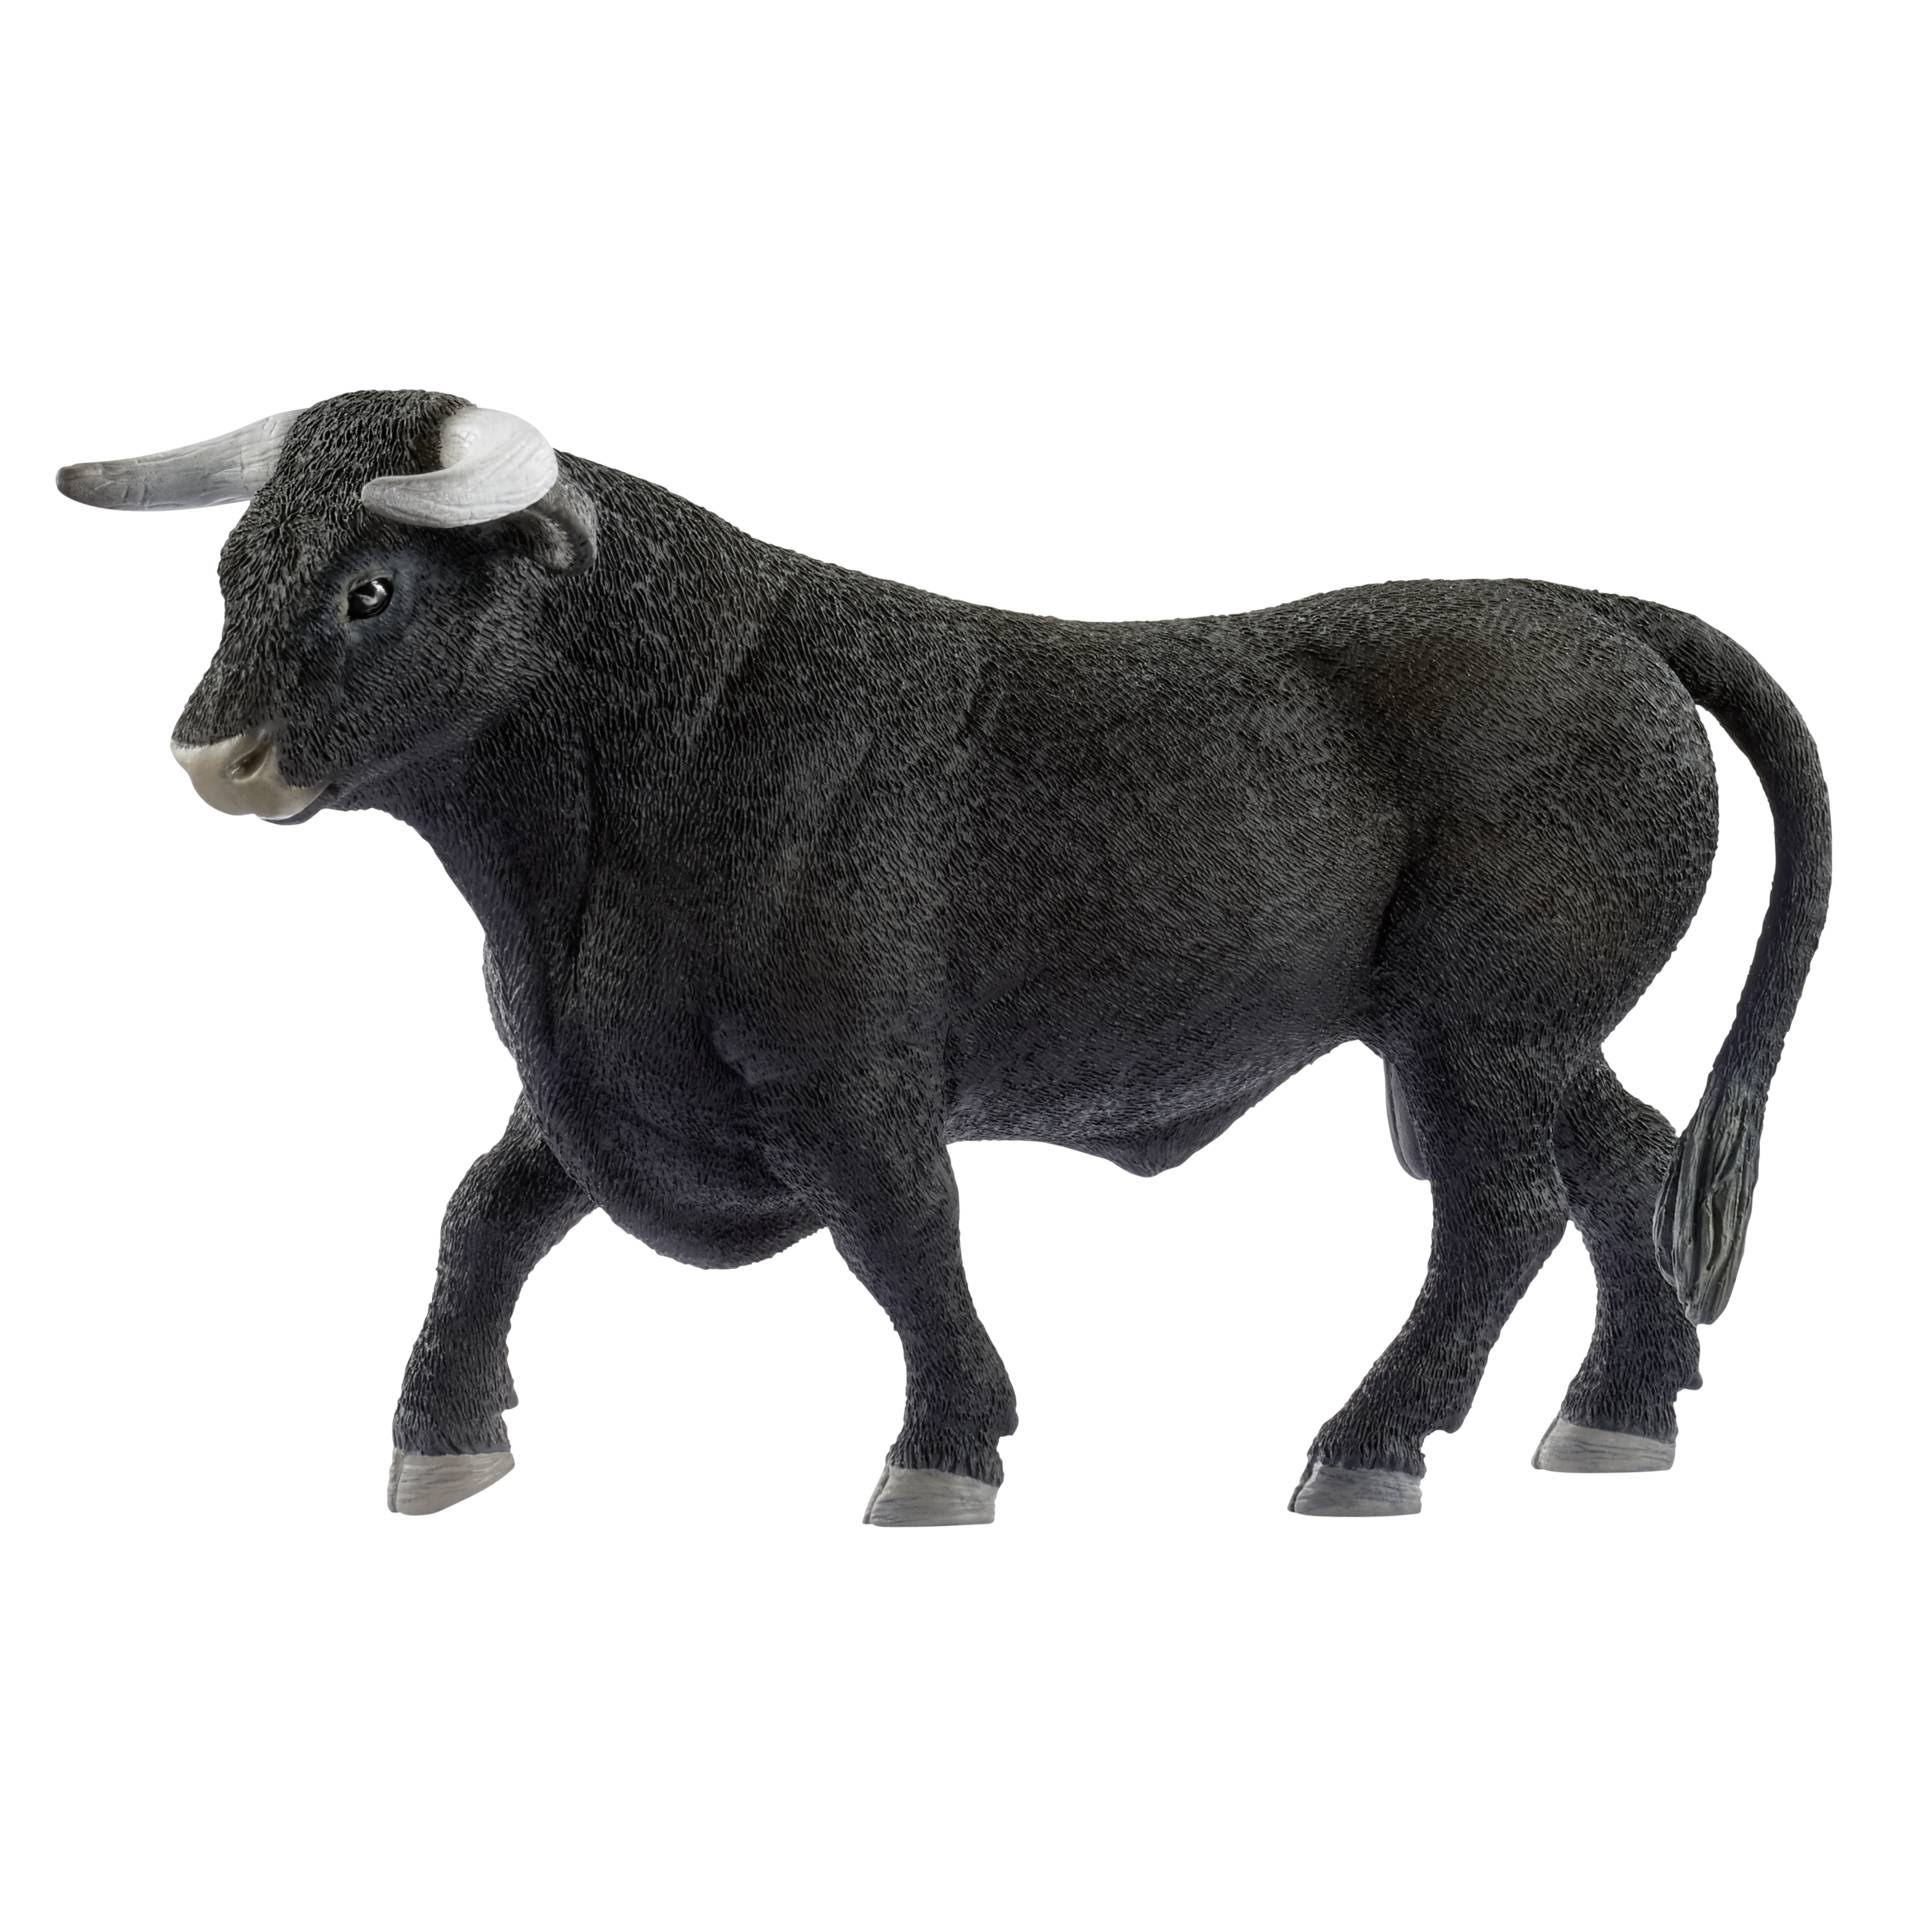 Schleich 13875 Figurine - Bull, Black